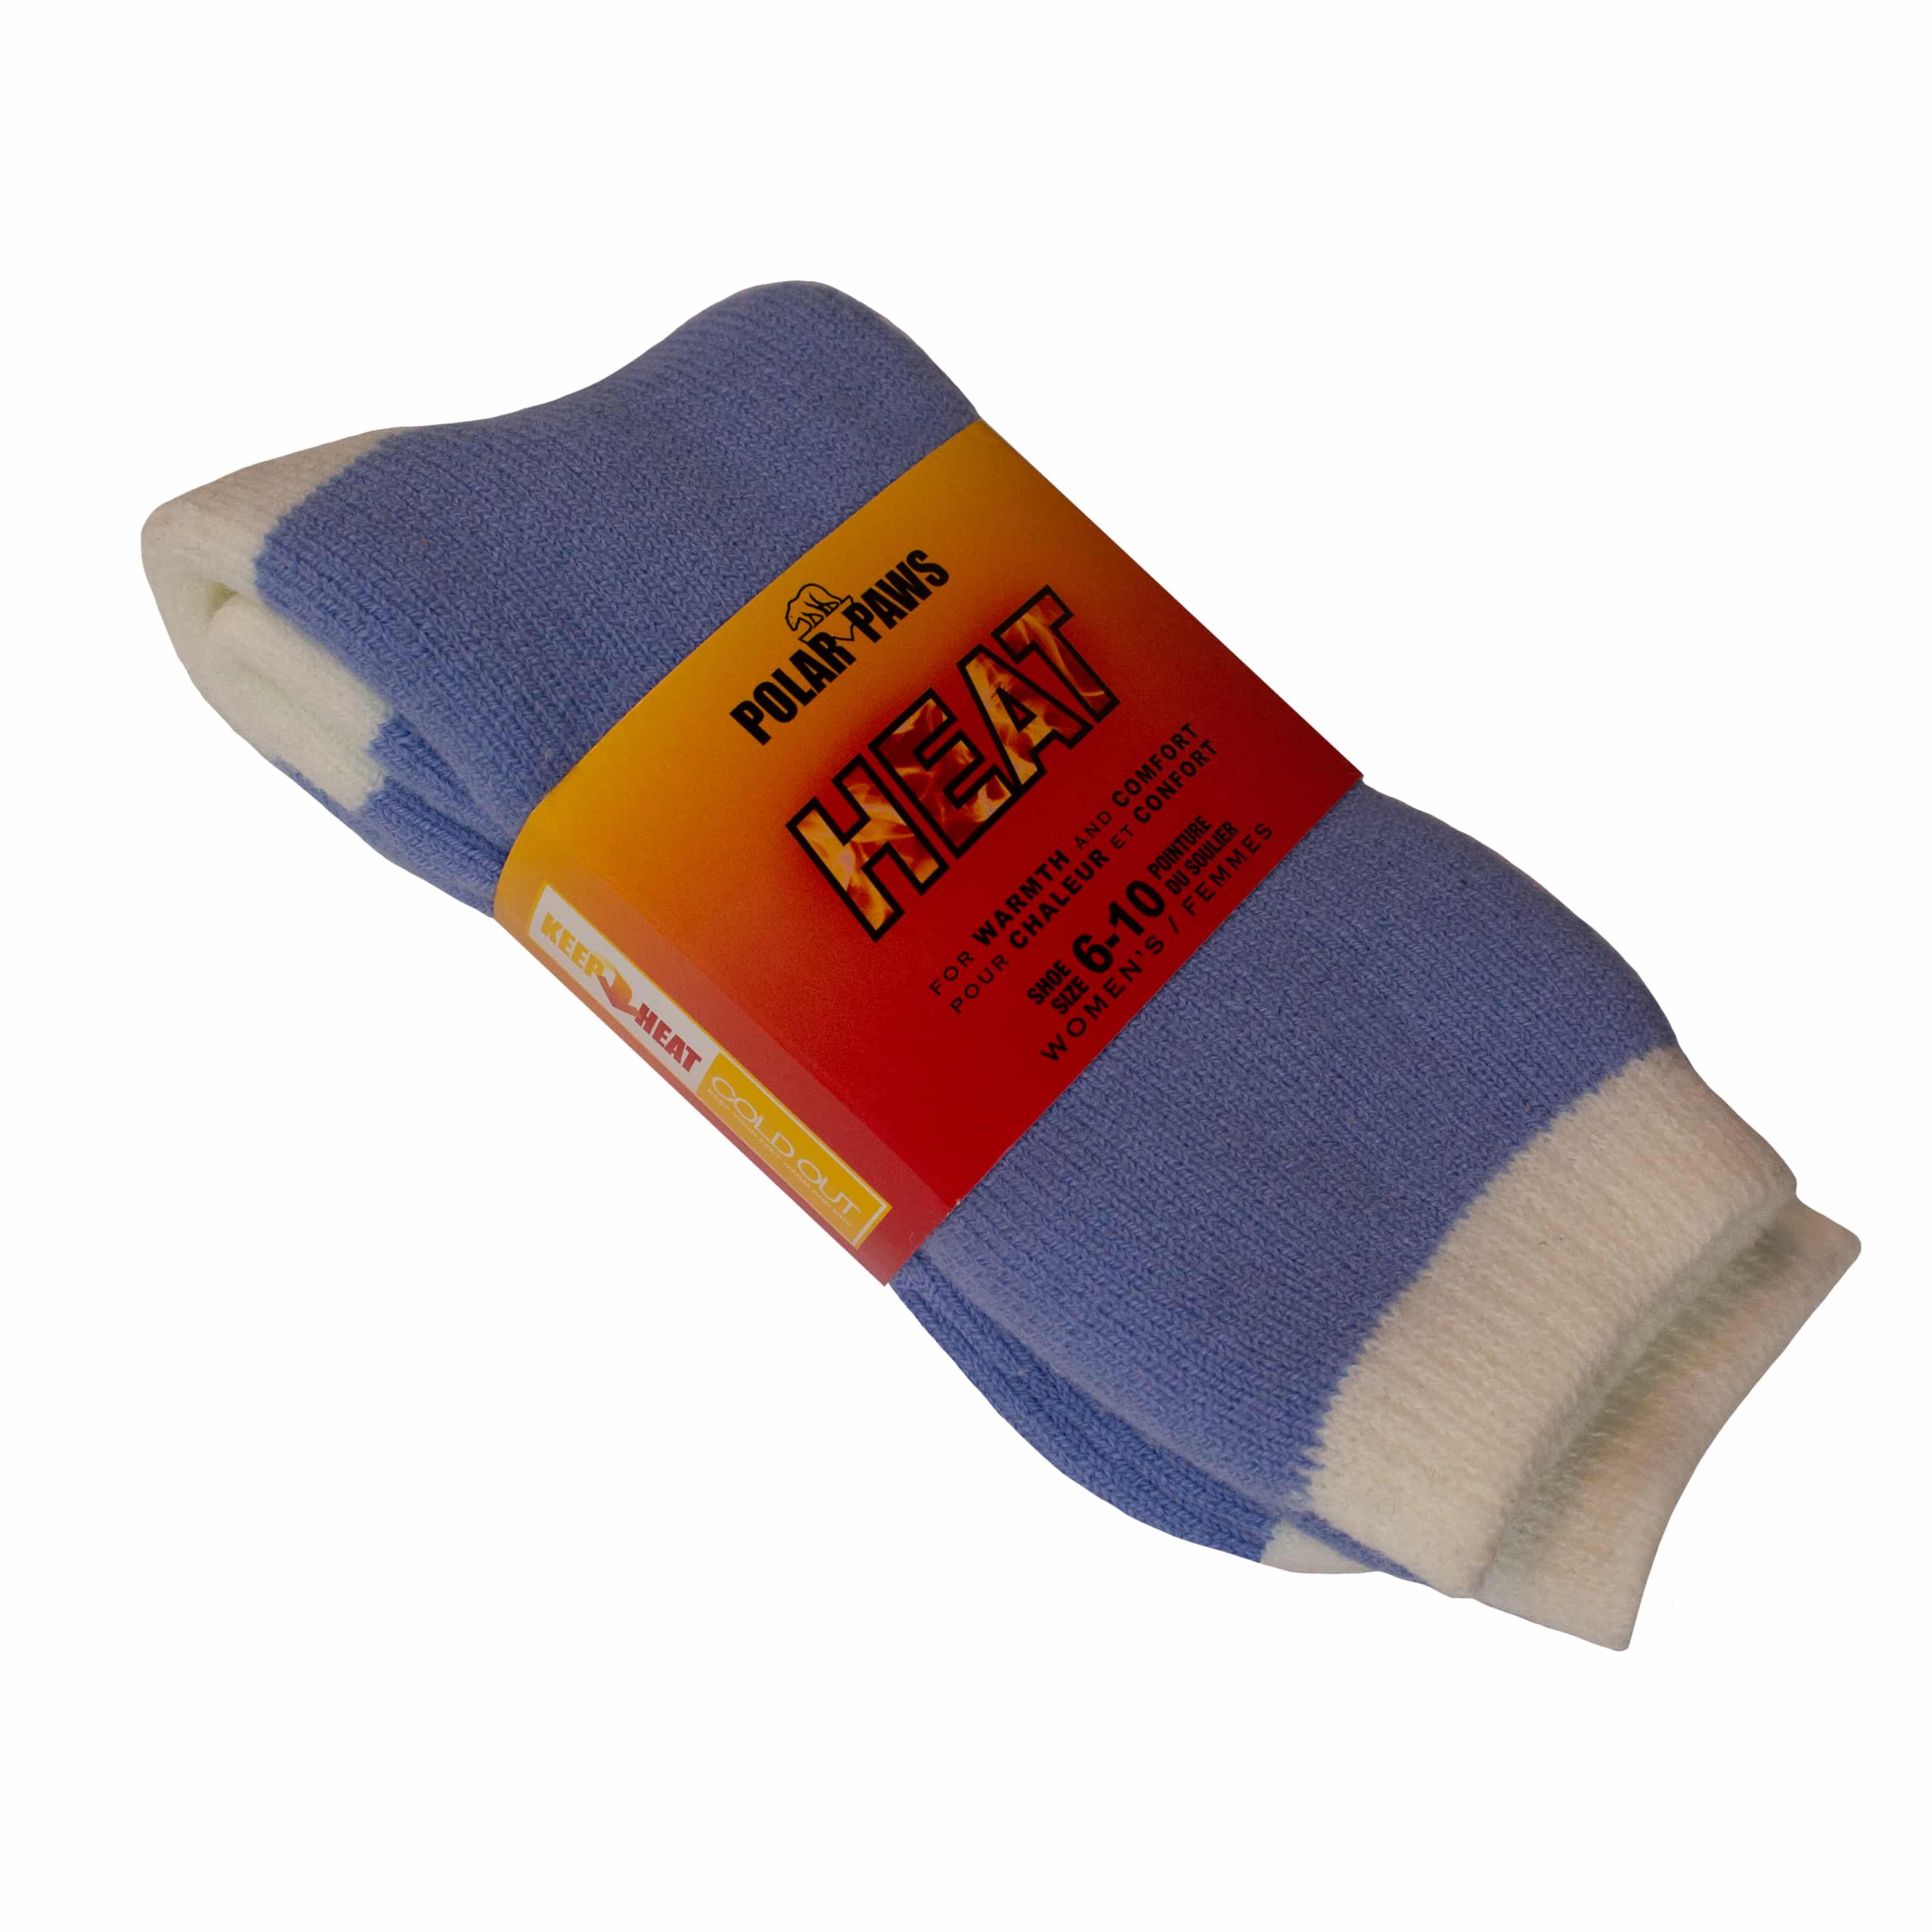 Thermal Socks For Women: Thermal Socks: Our Top Picks For Women